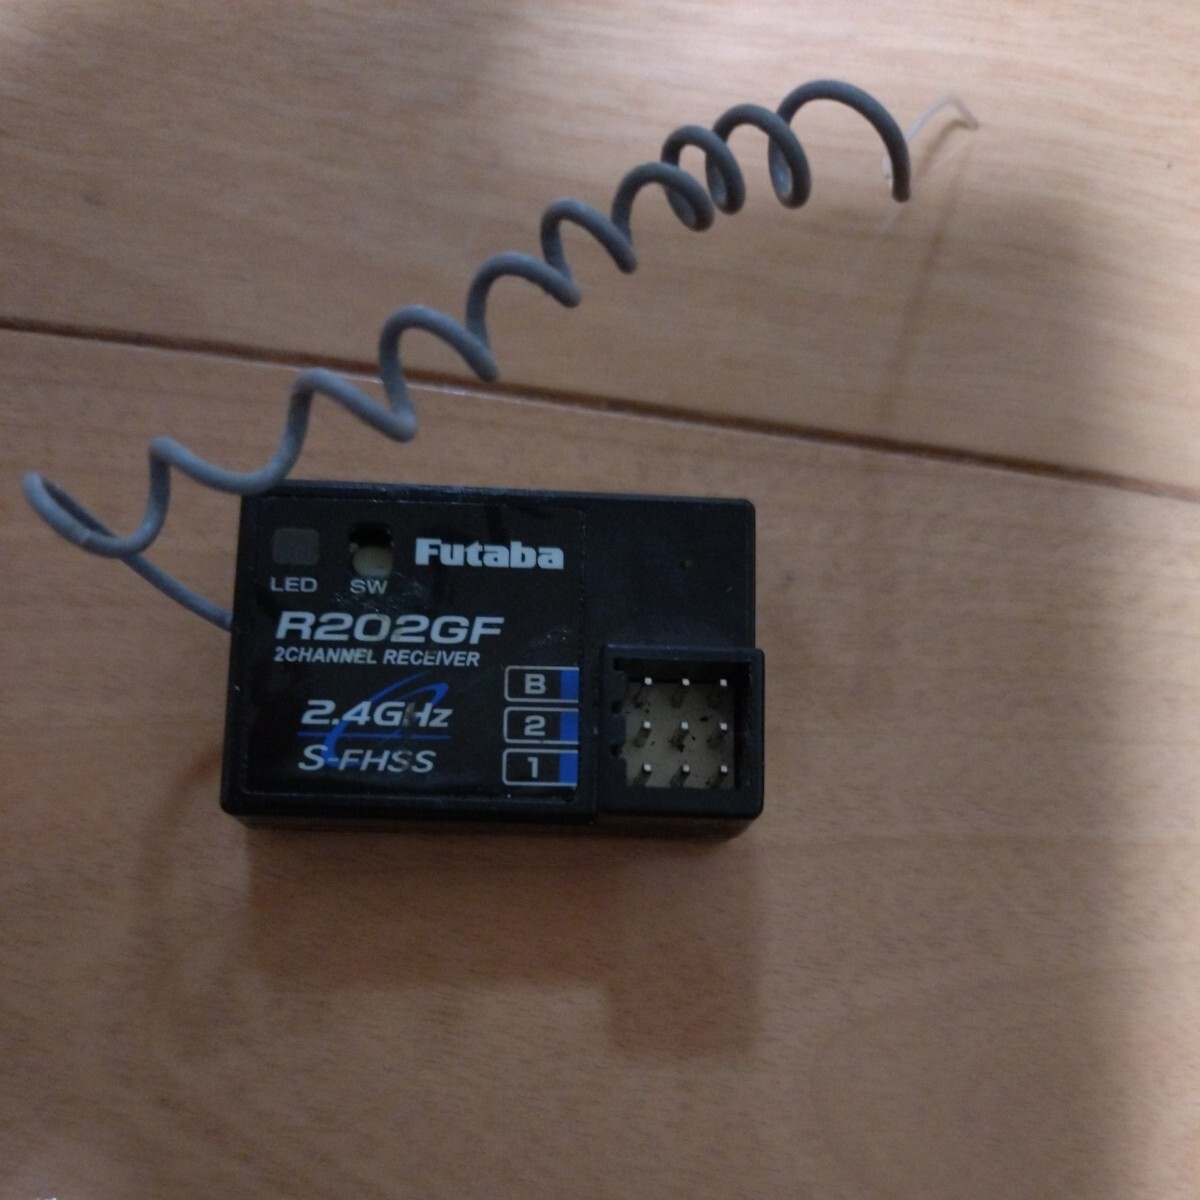  Futaba receiver R204GF 2.4GHz S-FHSS